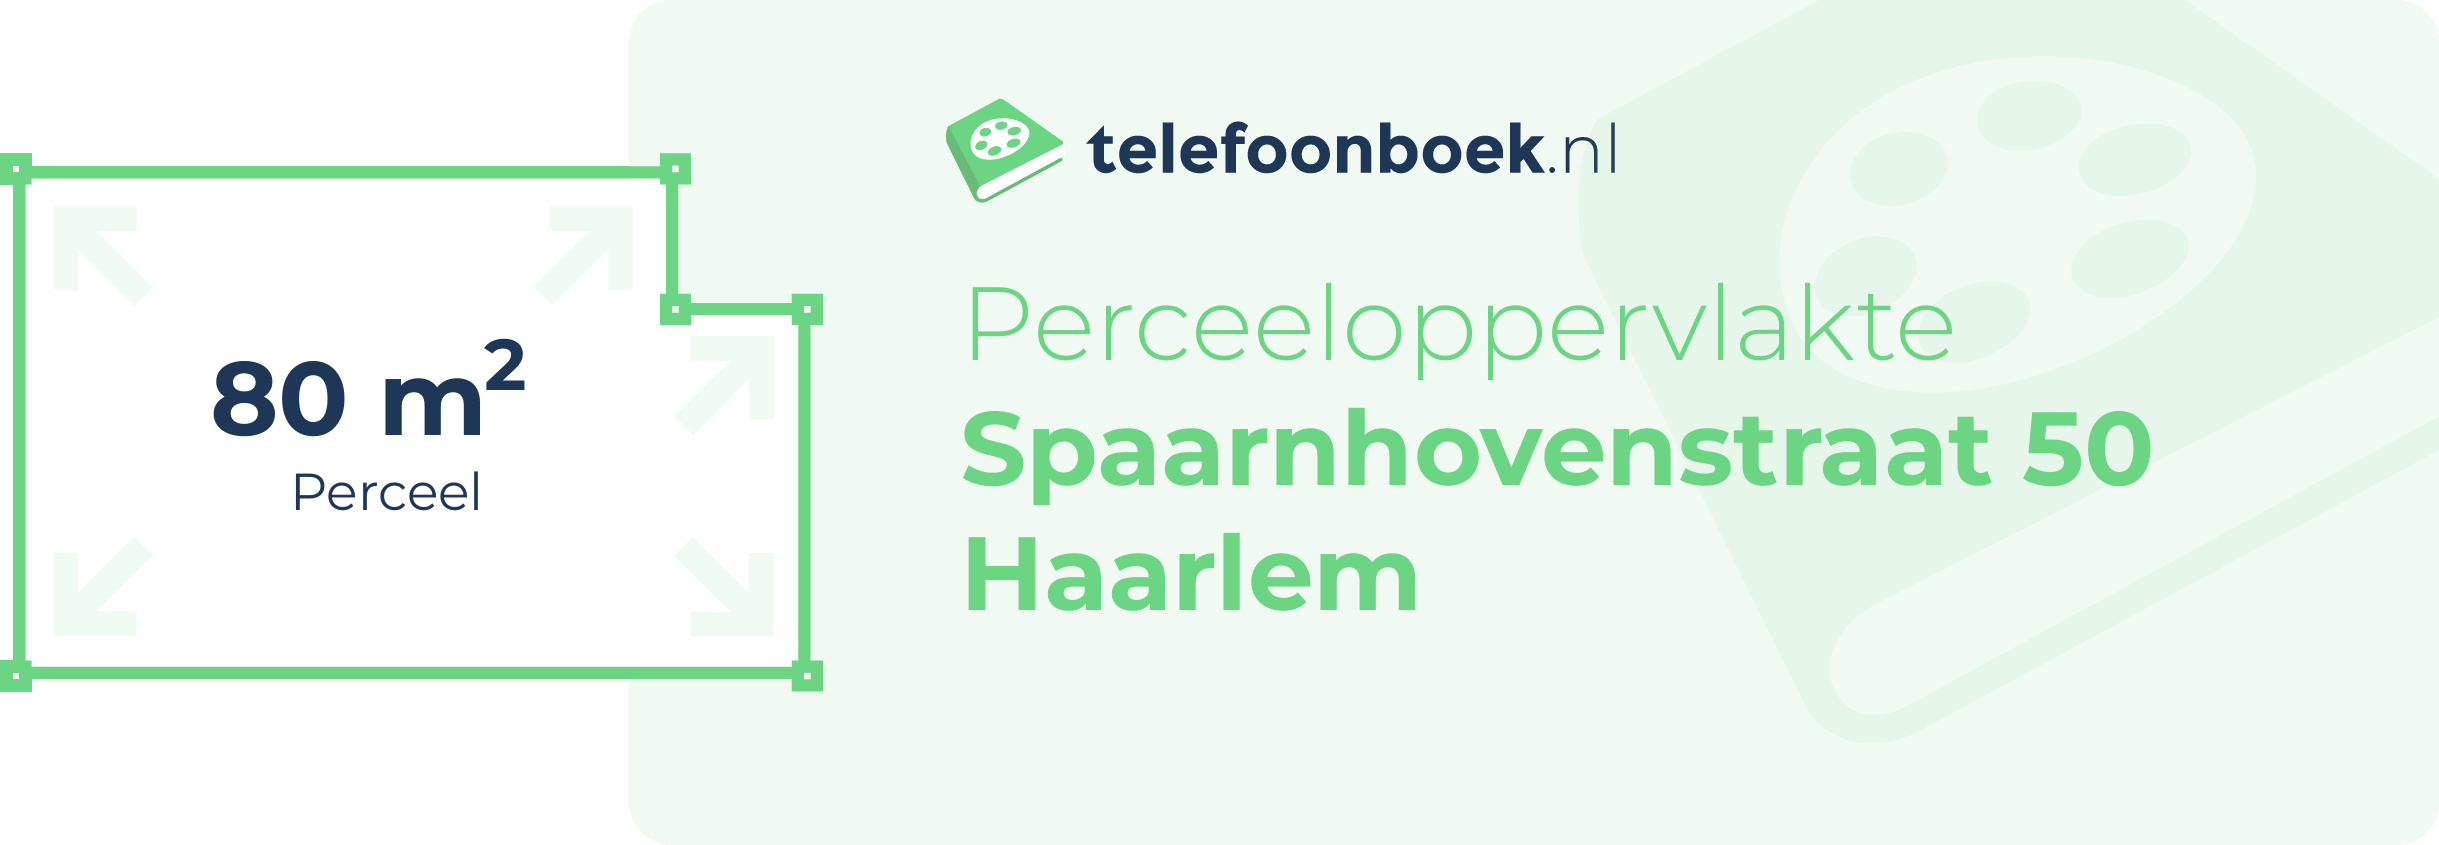 Perceeloppervlakte Spaarnhovenstraat 50 Haarlem